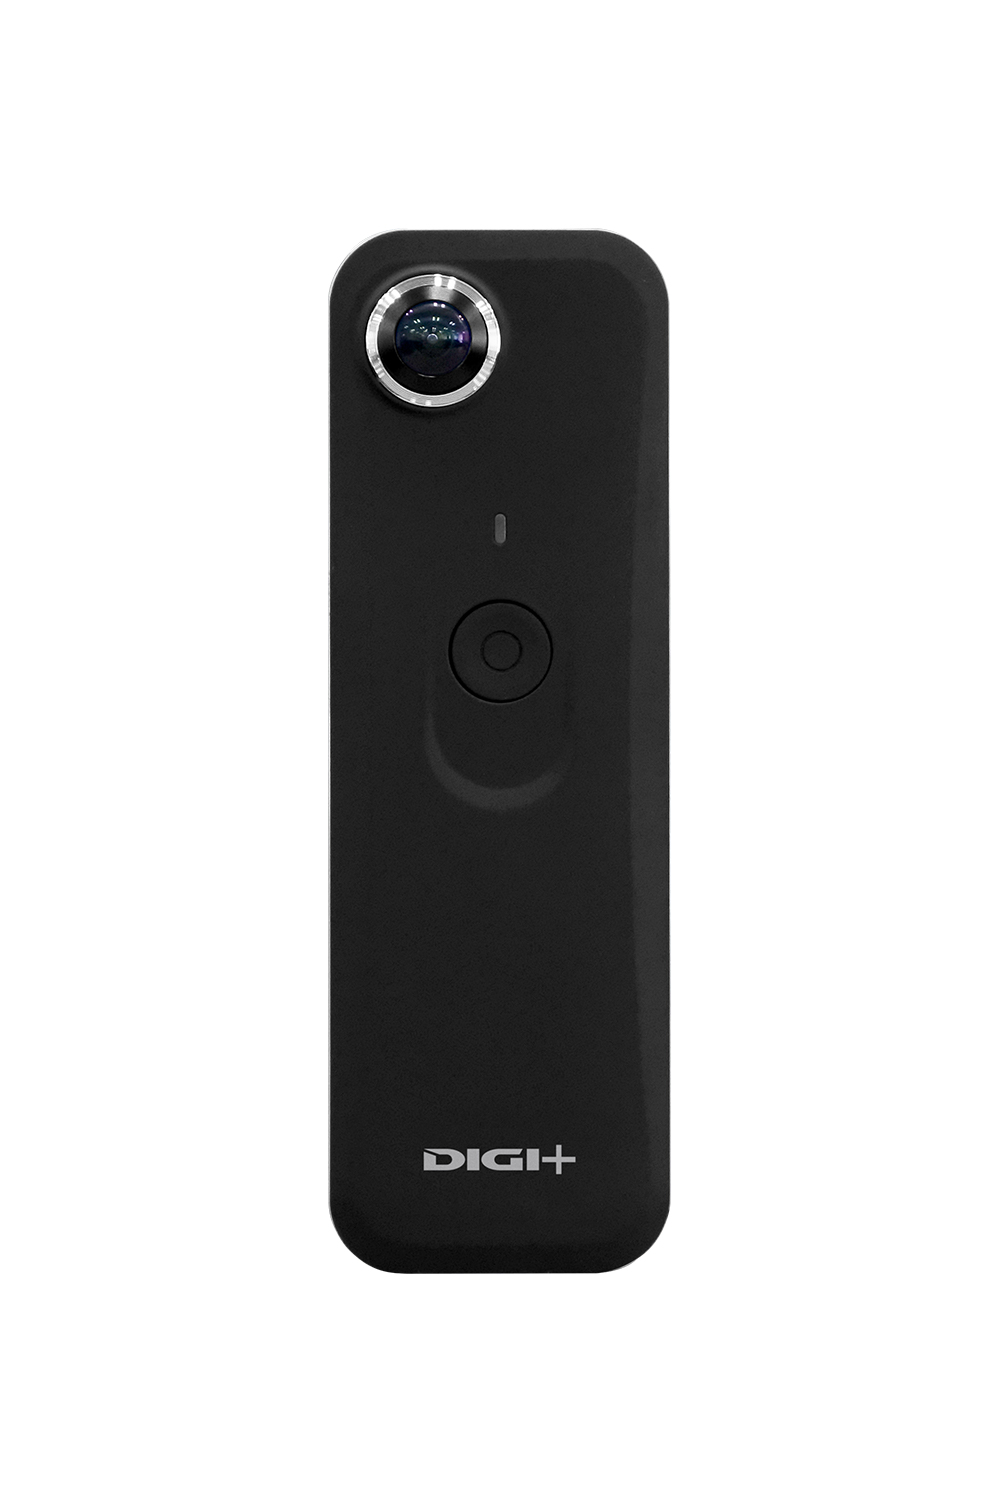 DIGI+ DGP-OCM01 性能/レビュー/口コミ | 360DCam:360度カメラ比較